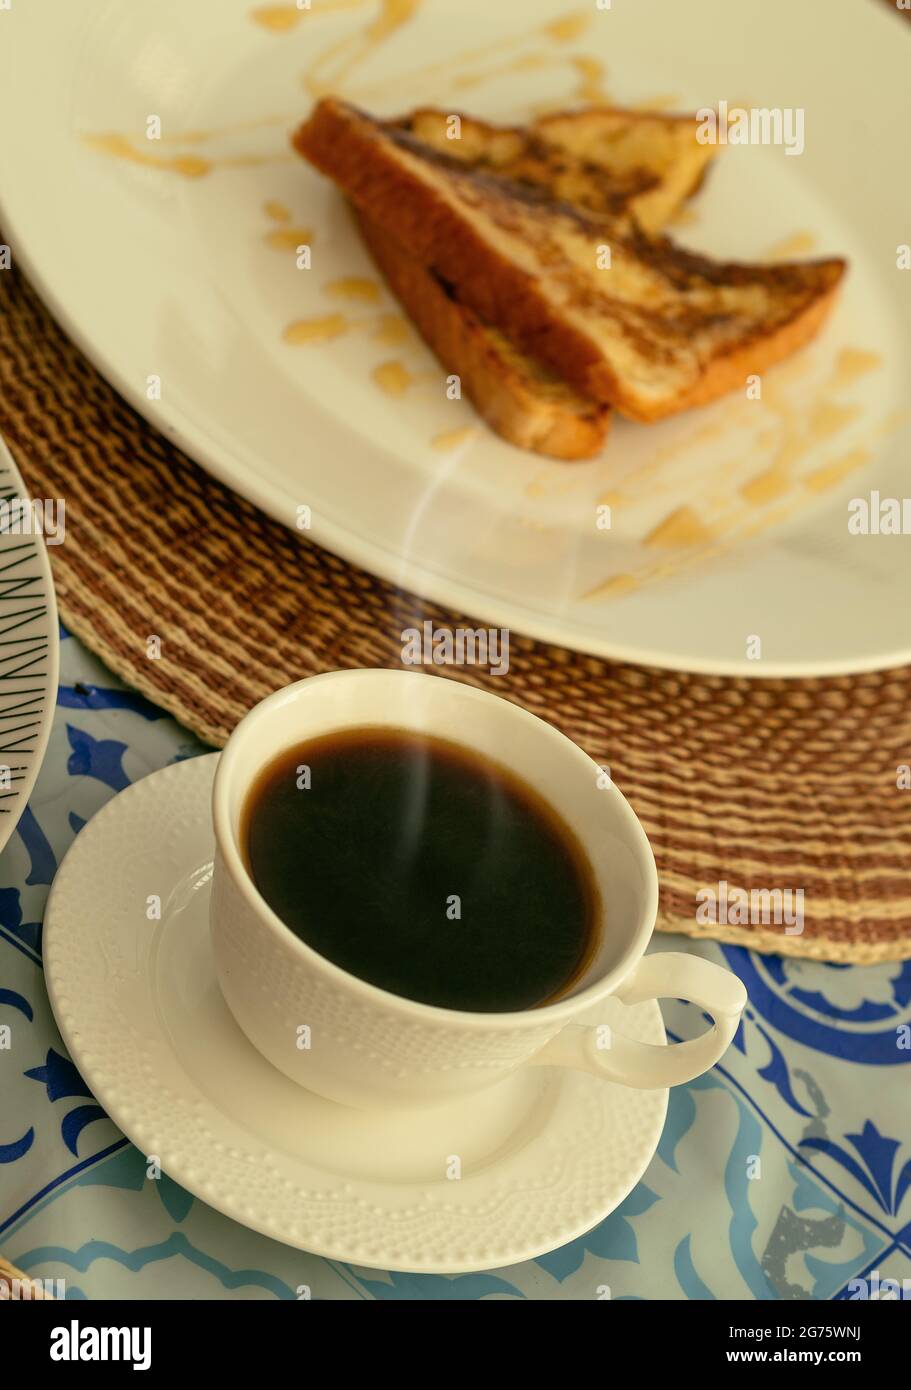 Eine weiße Tasse dampfenden schwarzen Kaffee, begleitet von französischem Toast zum Frühstück oder Brunch Stockfoto